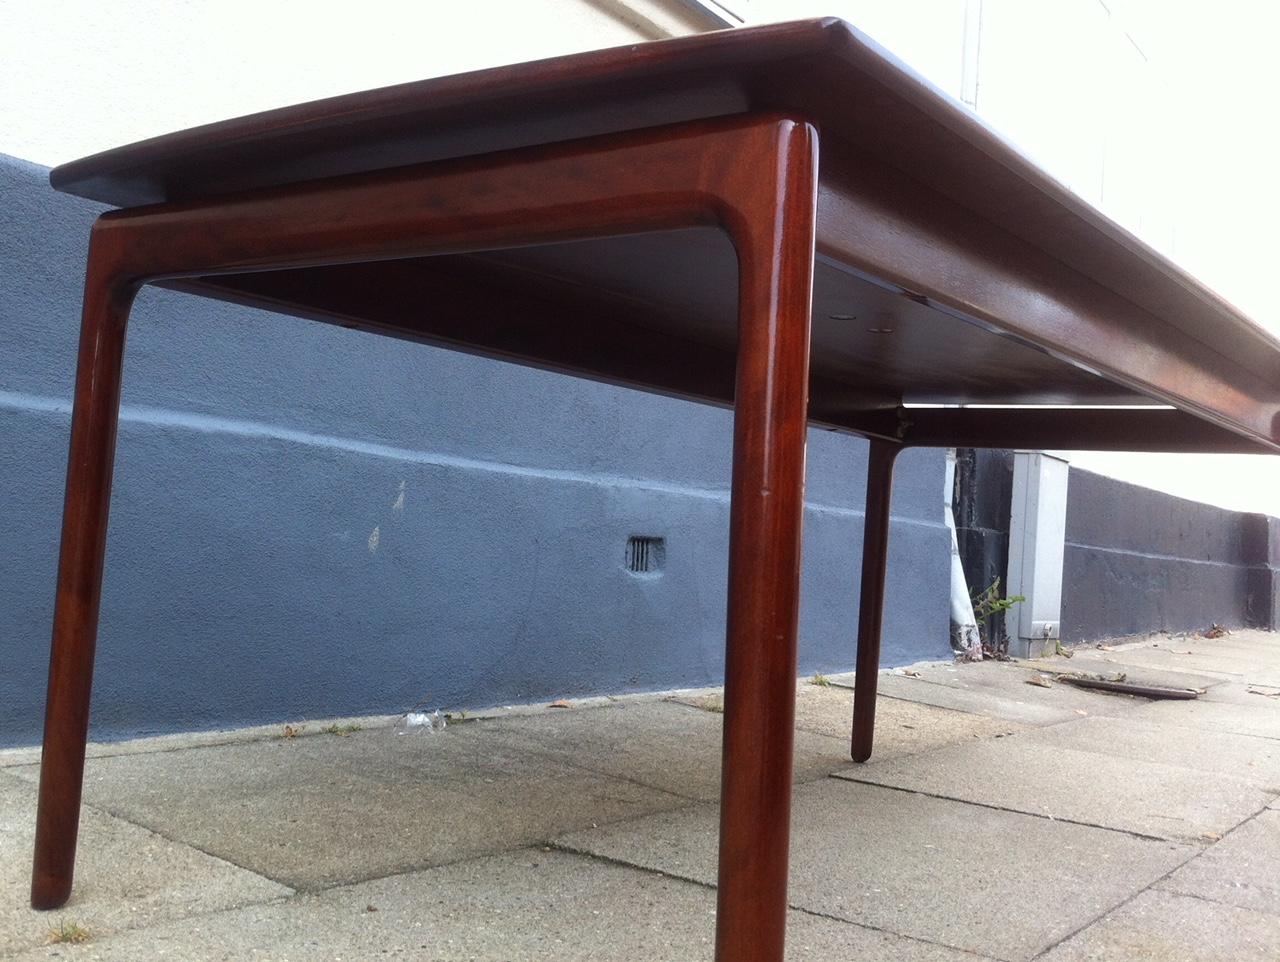 Grande table basse en acajou (Modèle : 018) conçue par l'architecte danois Ole Wanscher et fabriquée par P. Jeppesen dans les années 1960. Le plateau de la table semble flotter grâce à la conception des supports. La marque du fabricant,